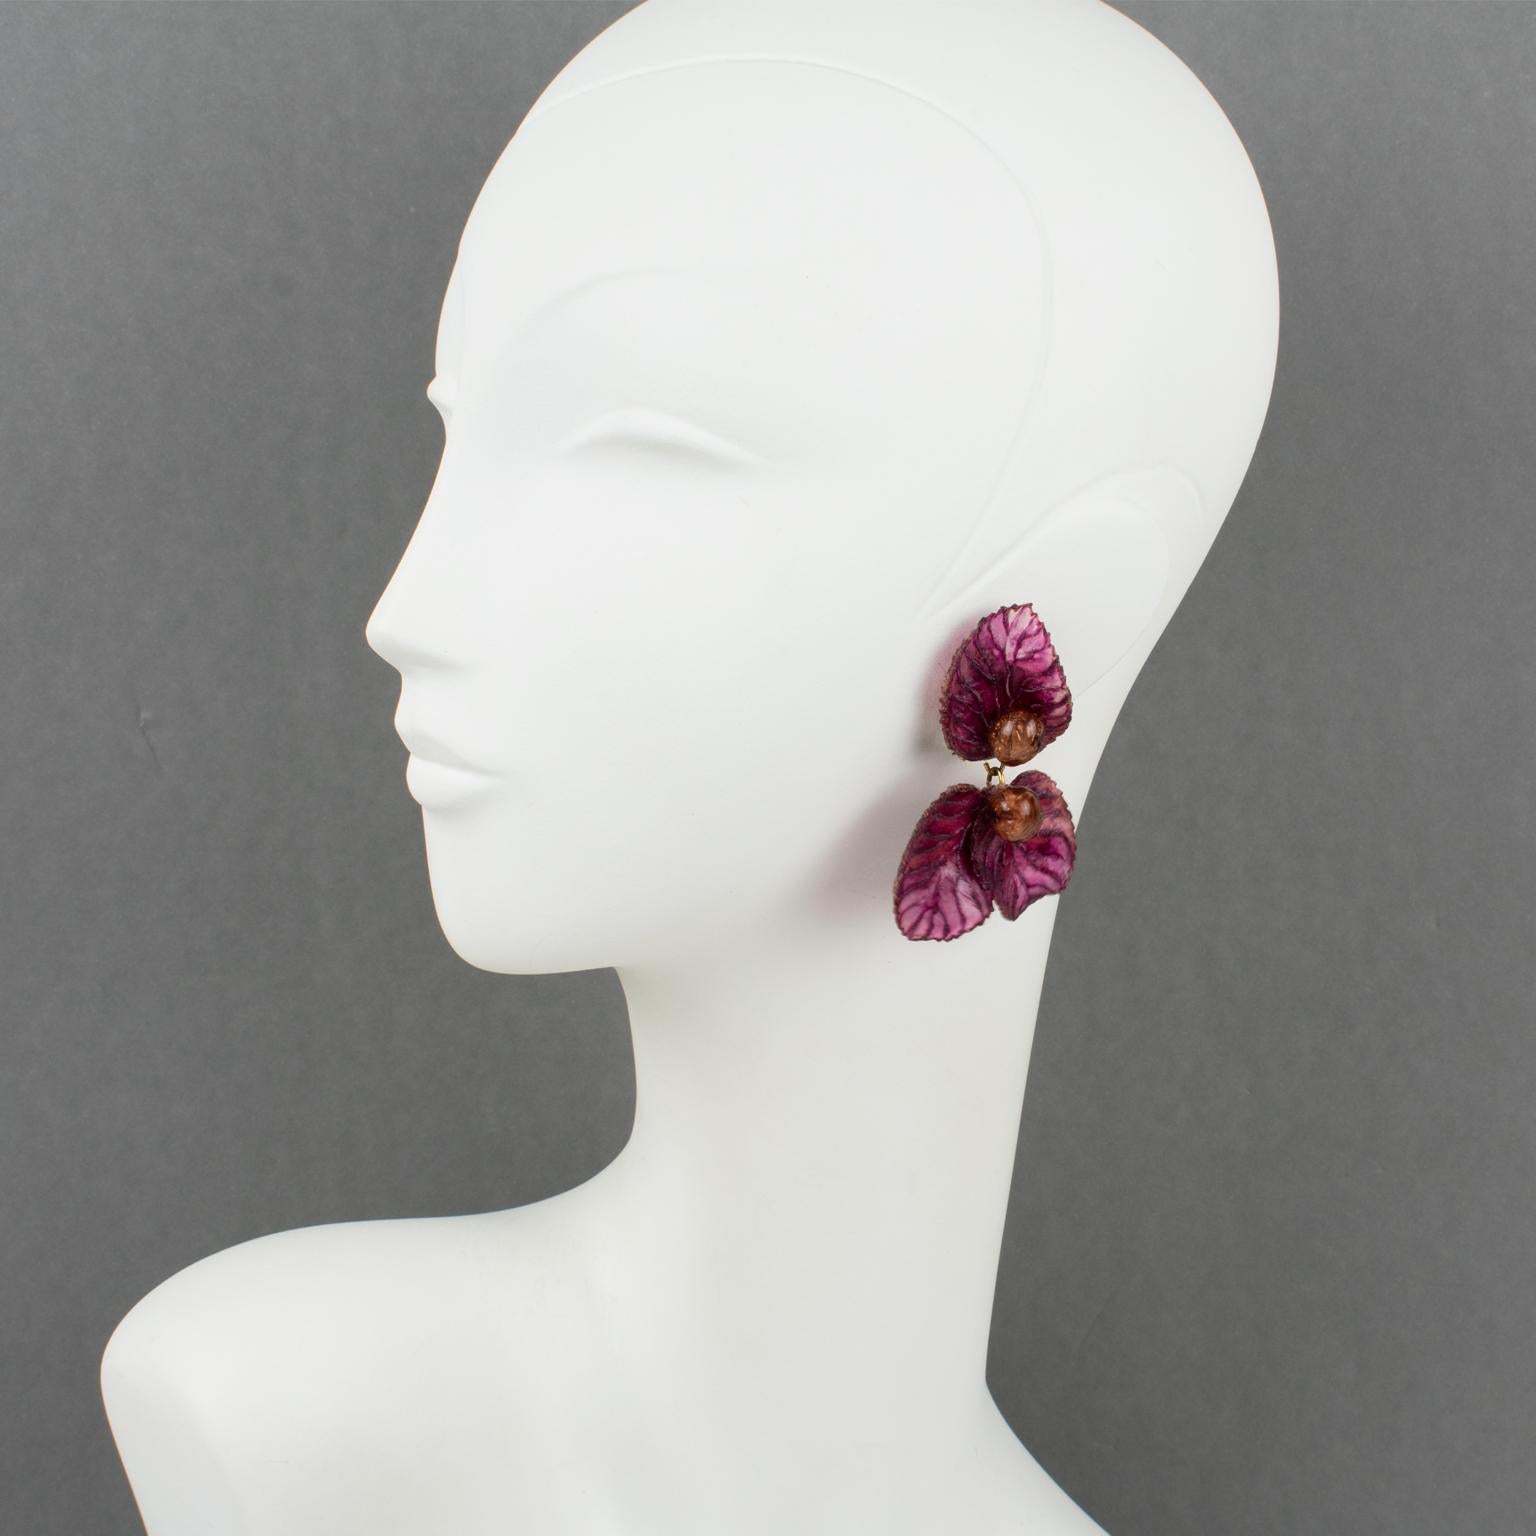 Cilea Paris hat für die französische Schmuckdesignerin Francoise Montague diese charmanten Ohrringe aus Kunstharz entworfen. Die Stücke weisen eine baumelnde Form auf, alle geschnitzt und strukturiert, mit Blättern und Lorbeermotiven in